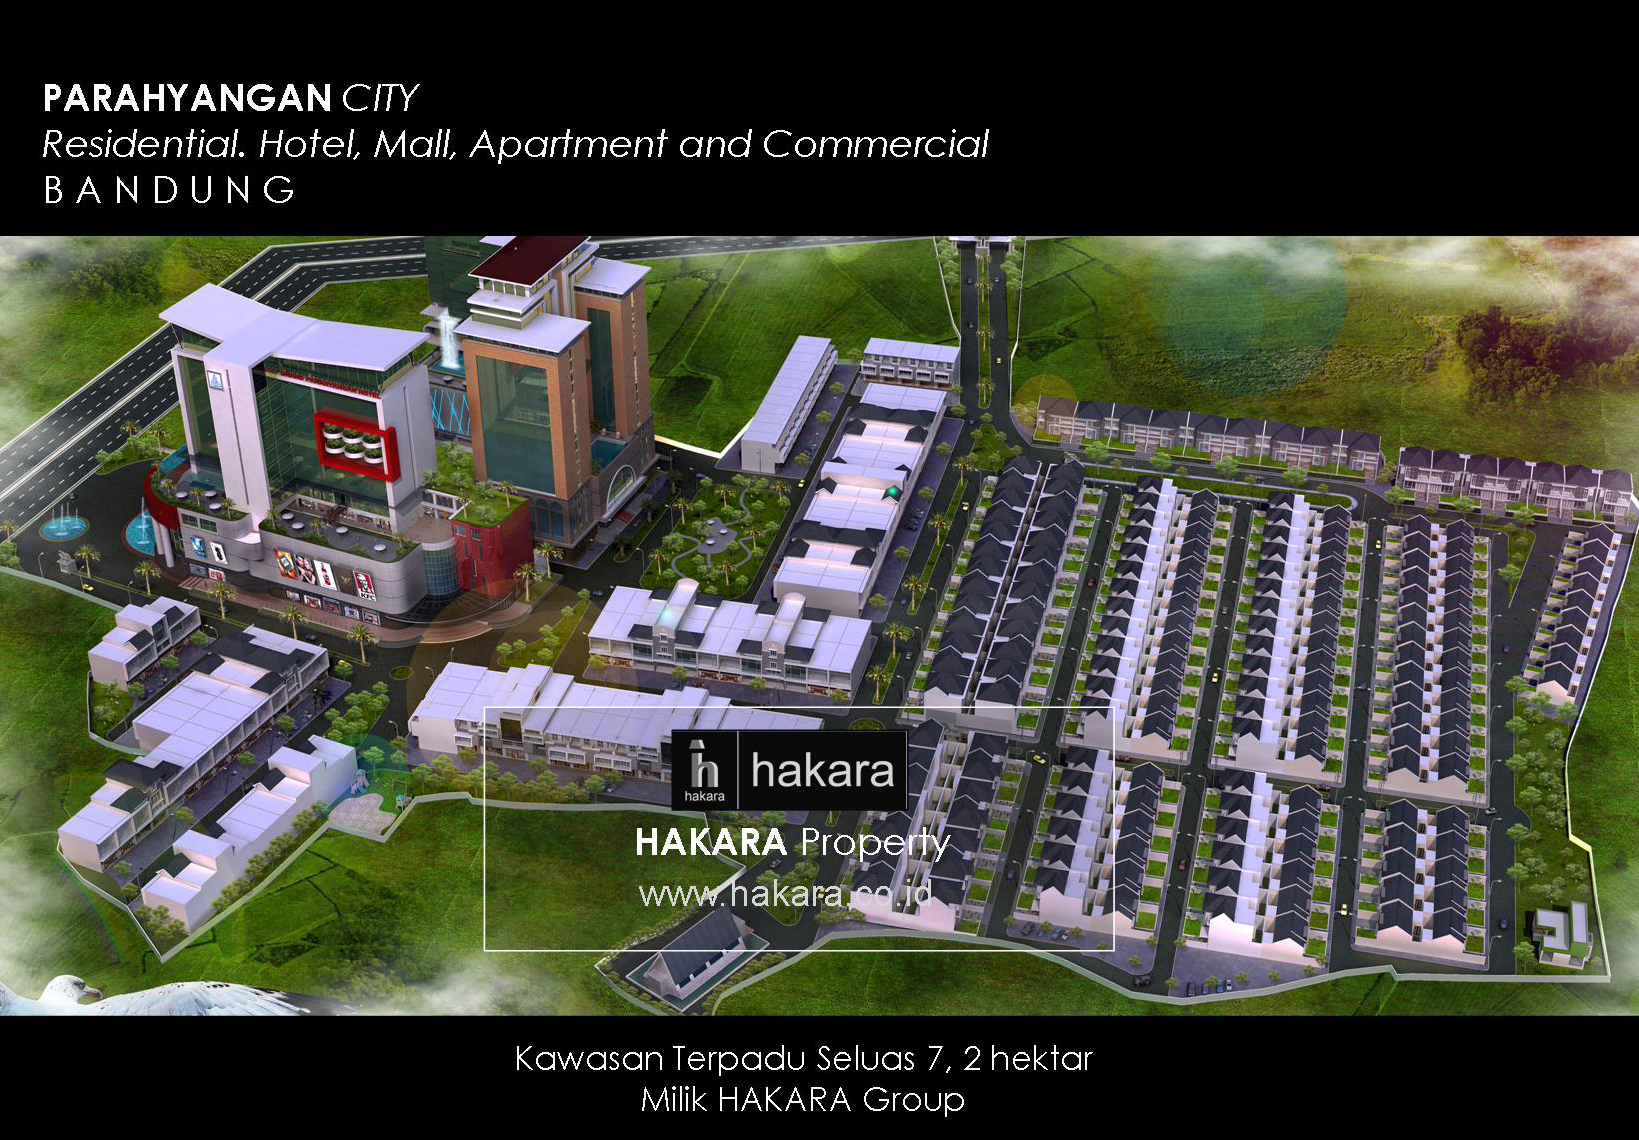 Hakara Property